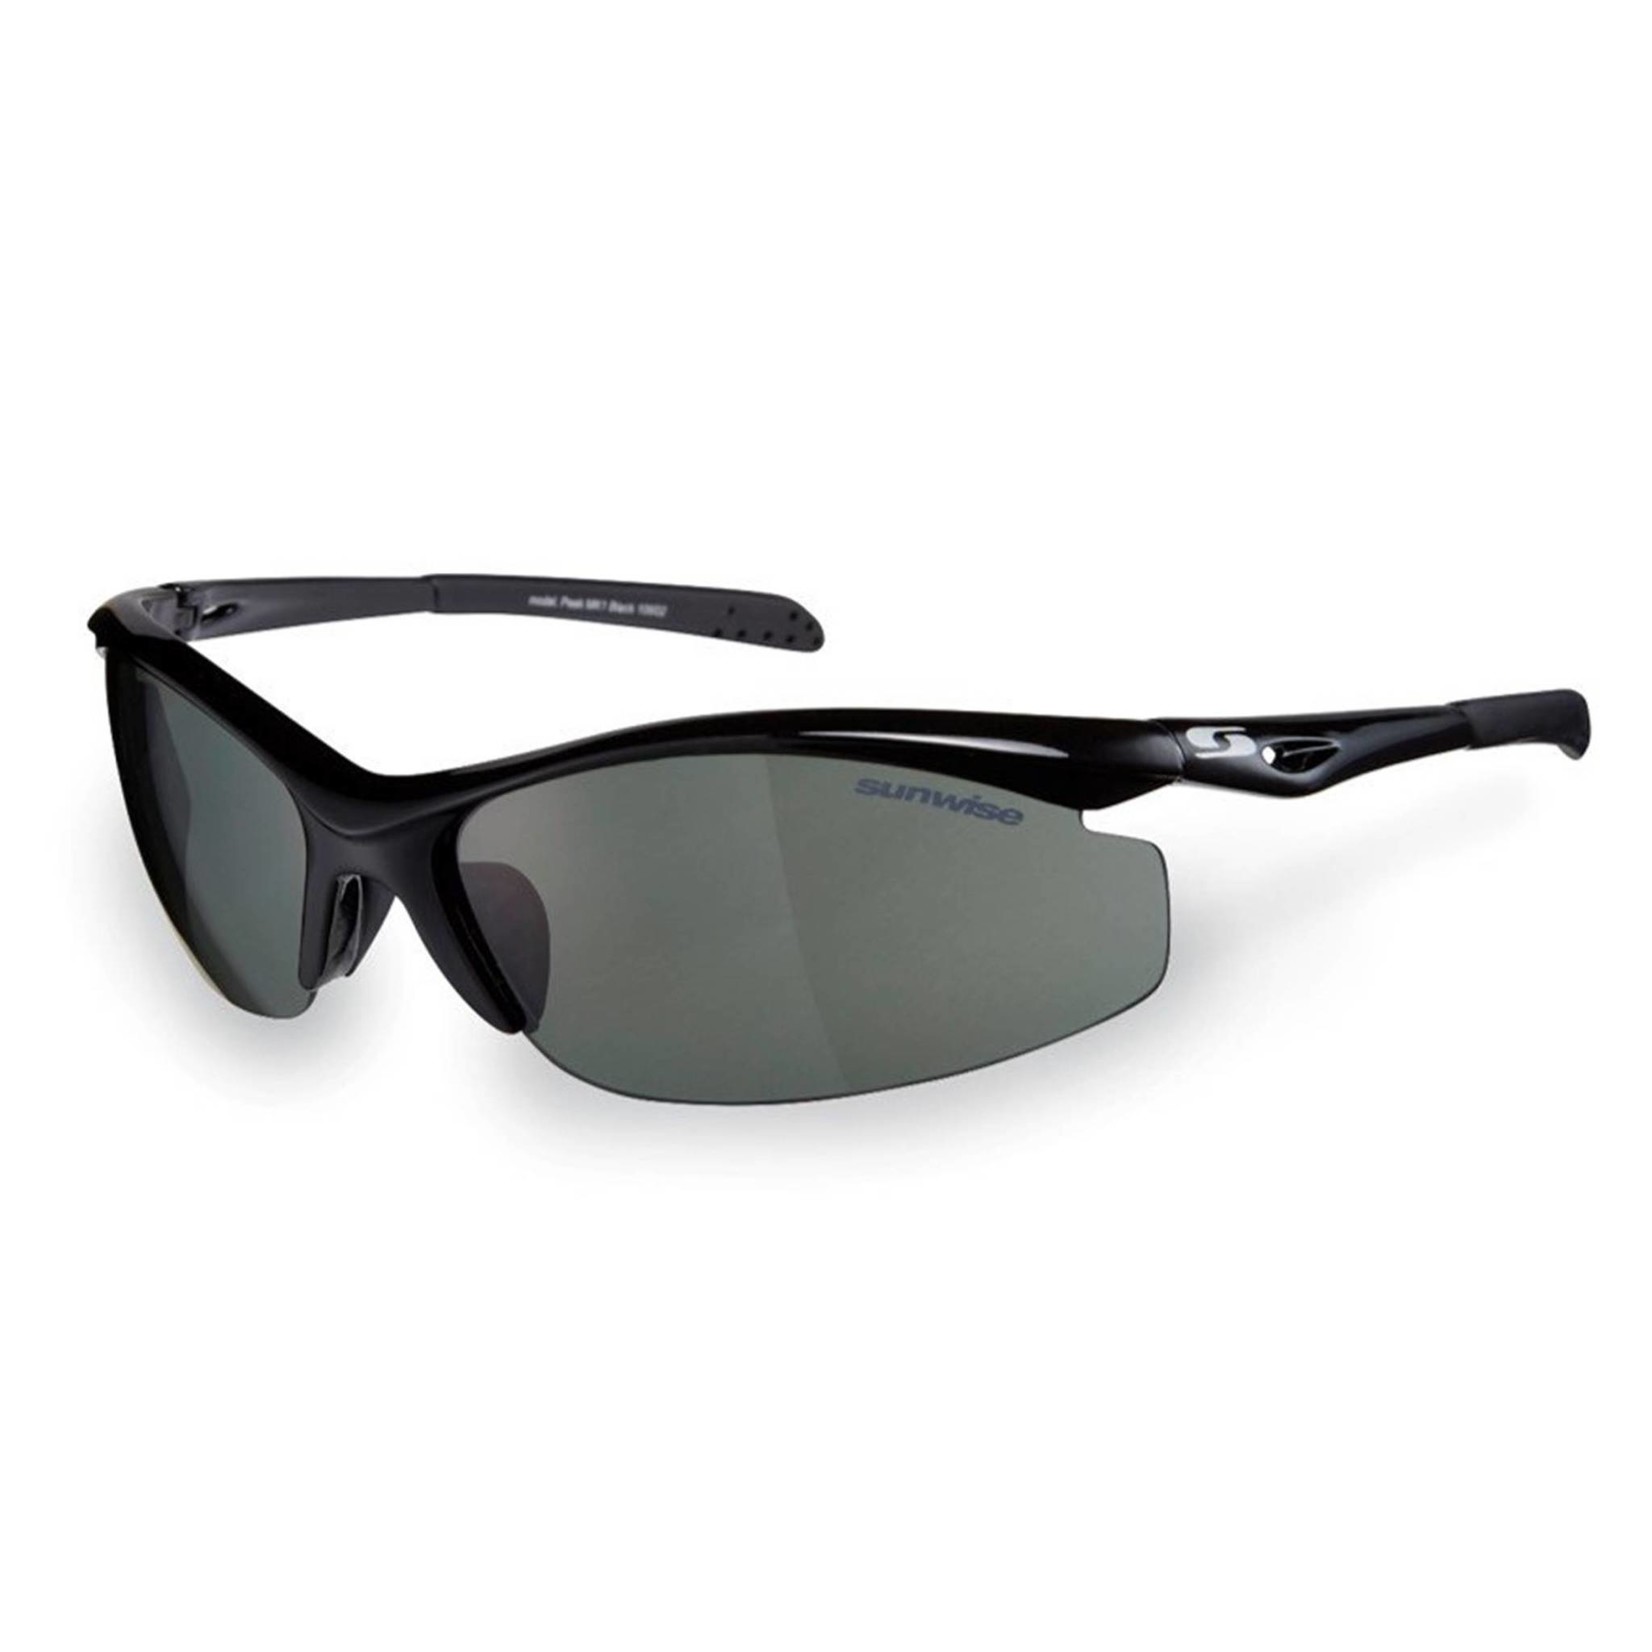 Sunwise Peak MK1 Sunglasses Black